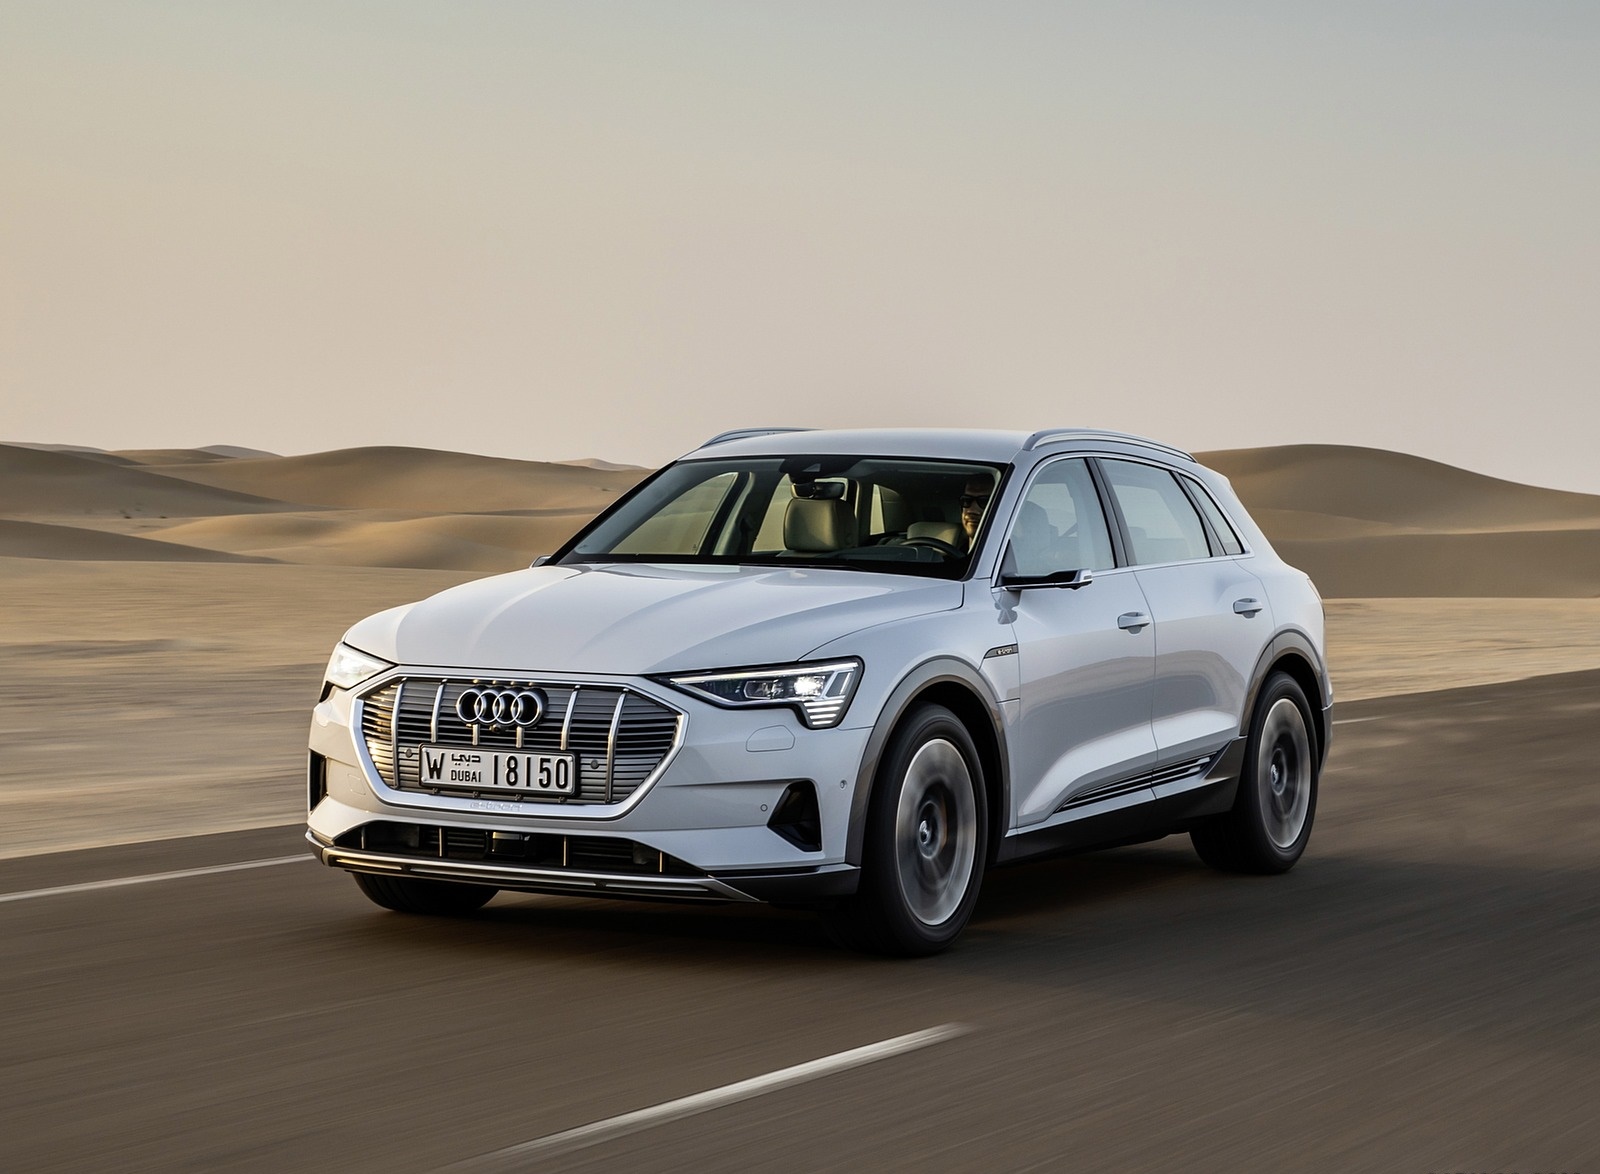 2019 Audi e-tron (Color: Glacier White) Front Three-Quarter Wallpapers #197 of 234